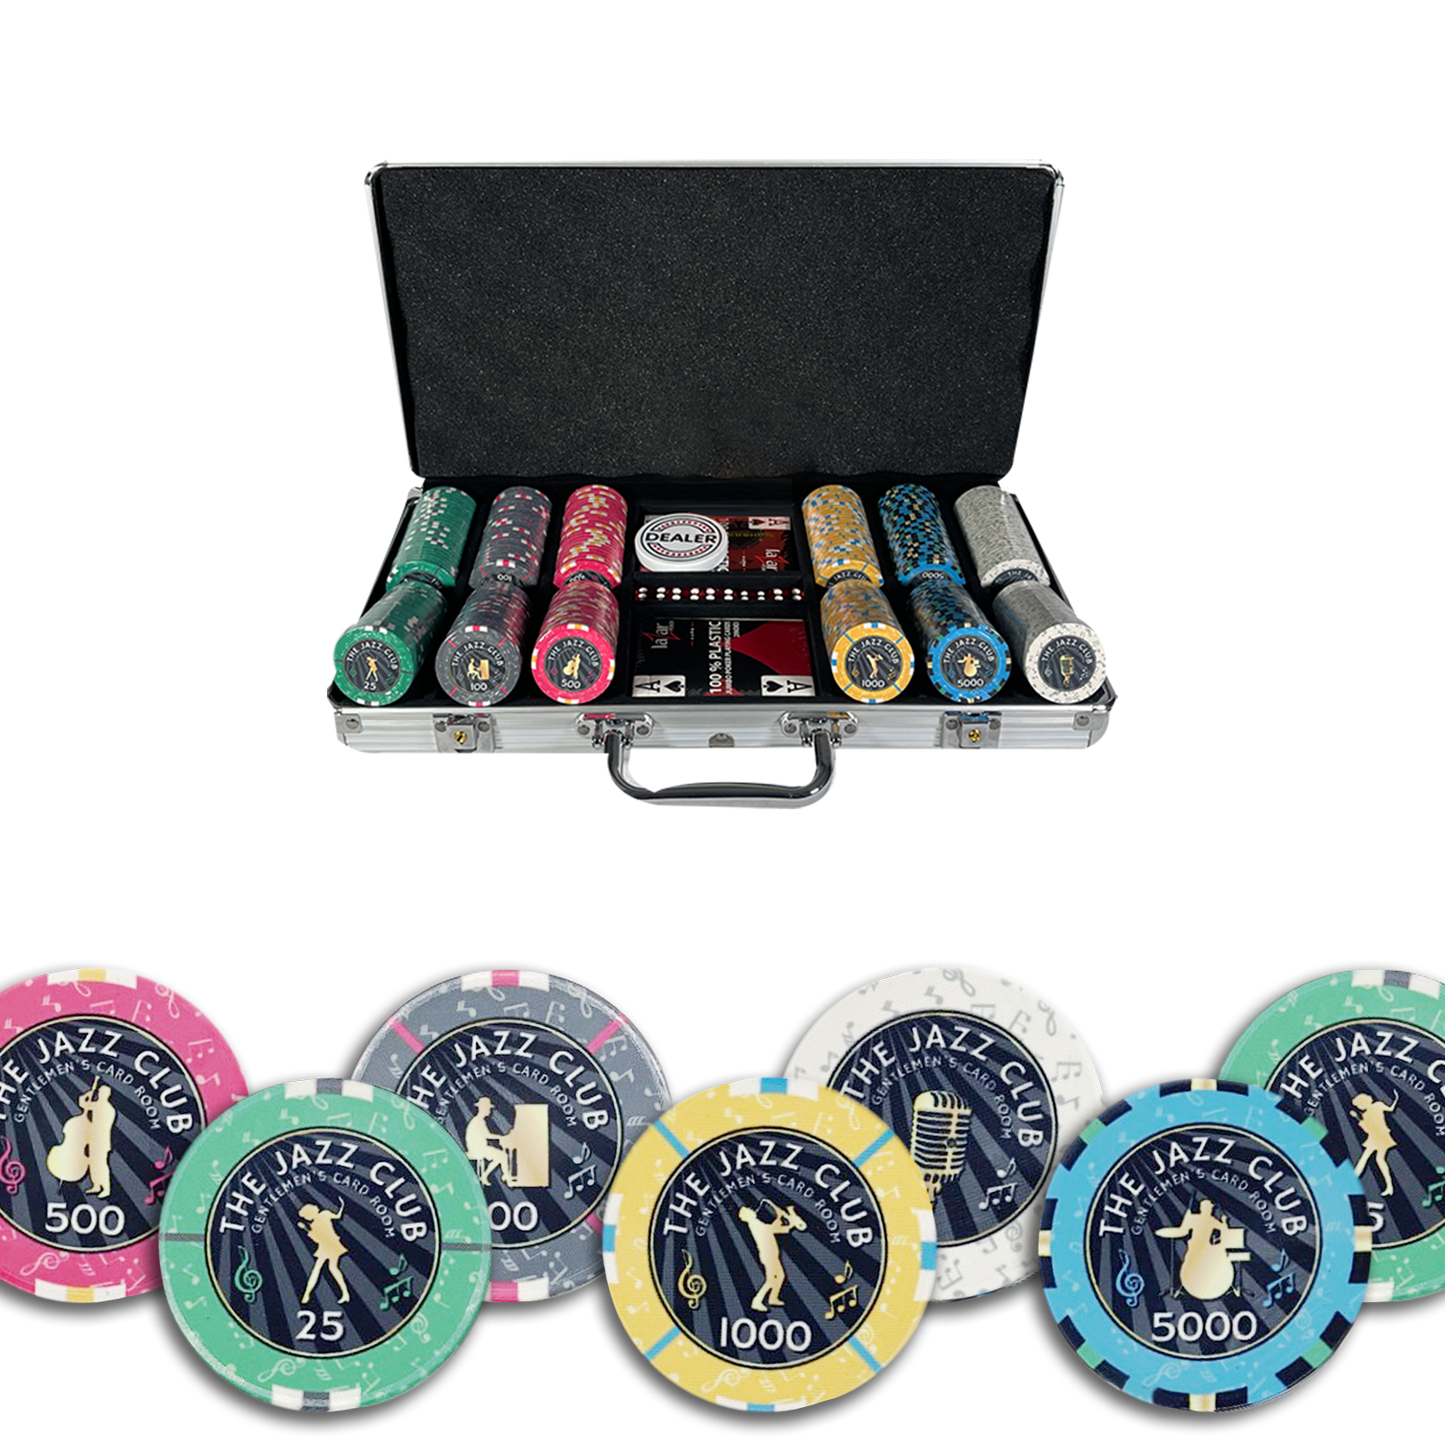 Der Jazz Club Poker enthält 300 Chips